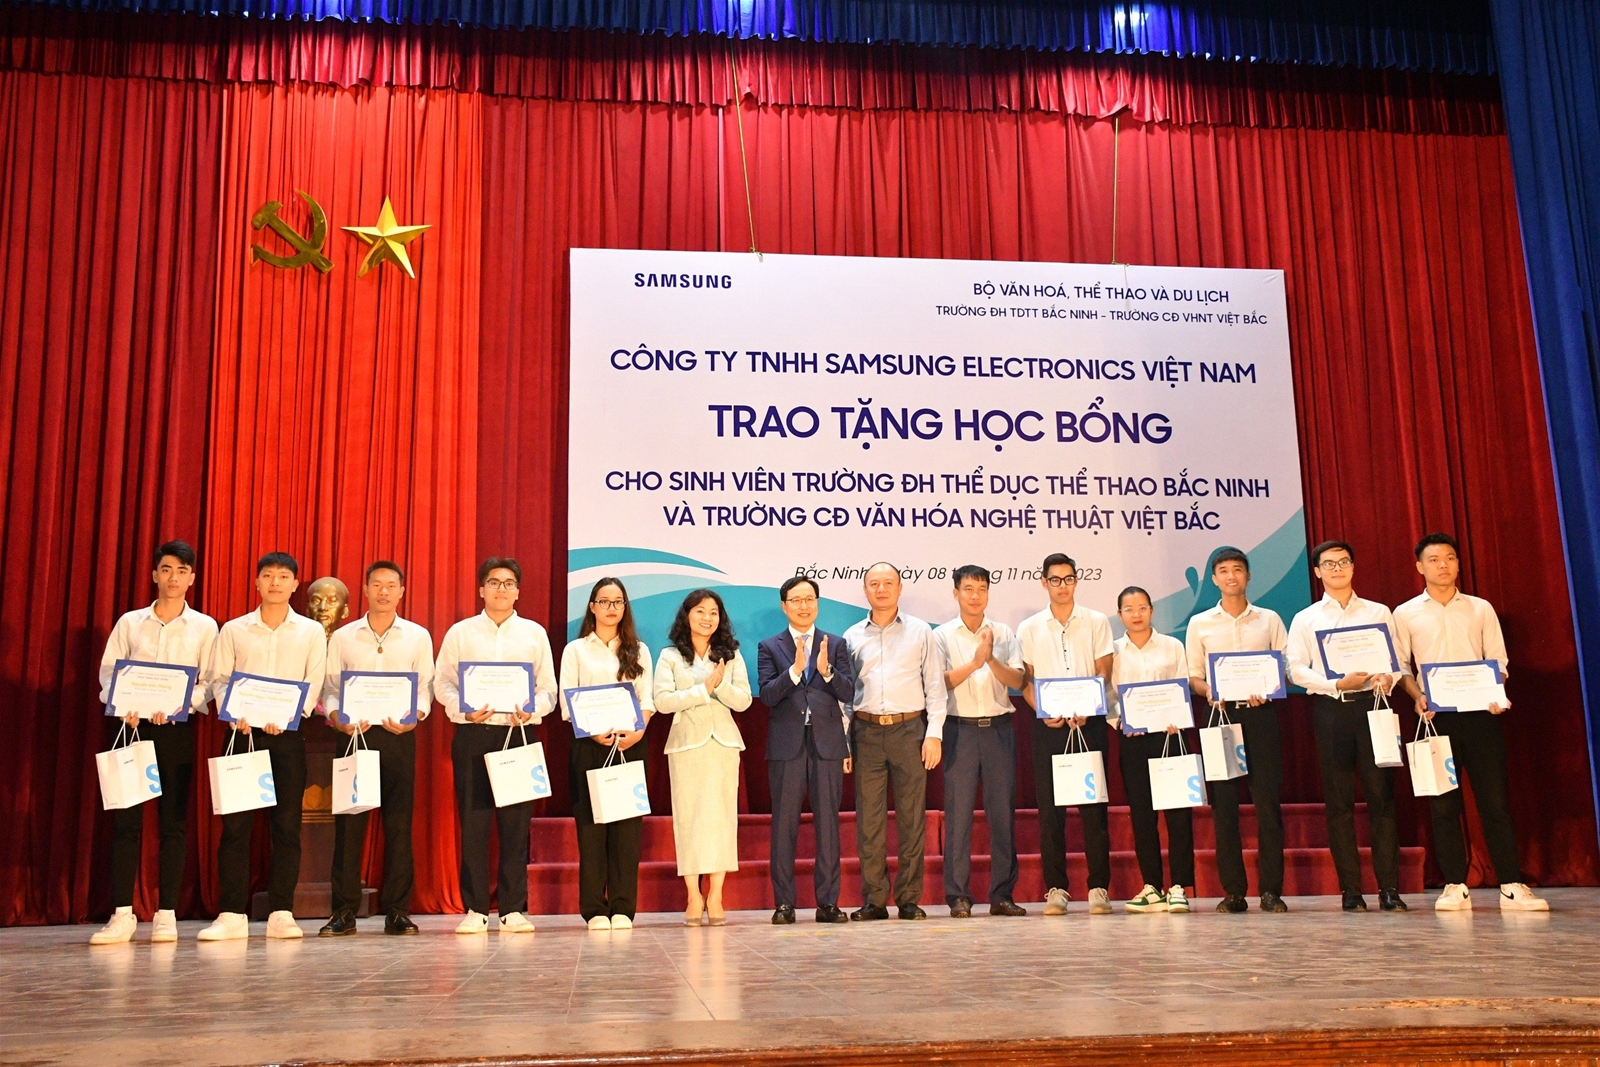 Công ty SAMSUNG Việt Nam trao tặng 80 suất học bổng cho sinh viên Trường Đại học TDTT Bắc Ninh và trường Cao đẳng Văn hóa nghệ thuật Việt Bắc